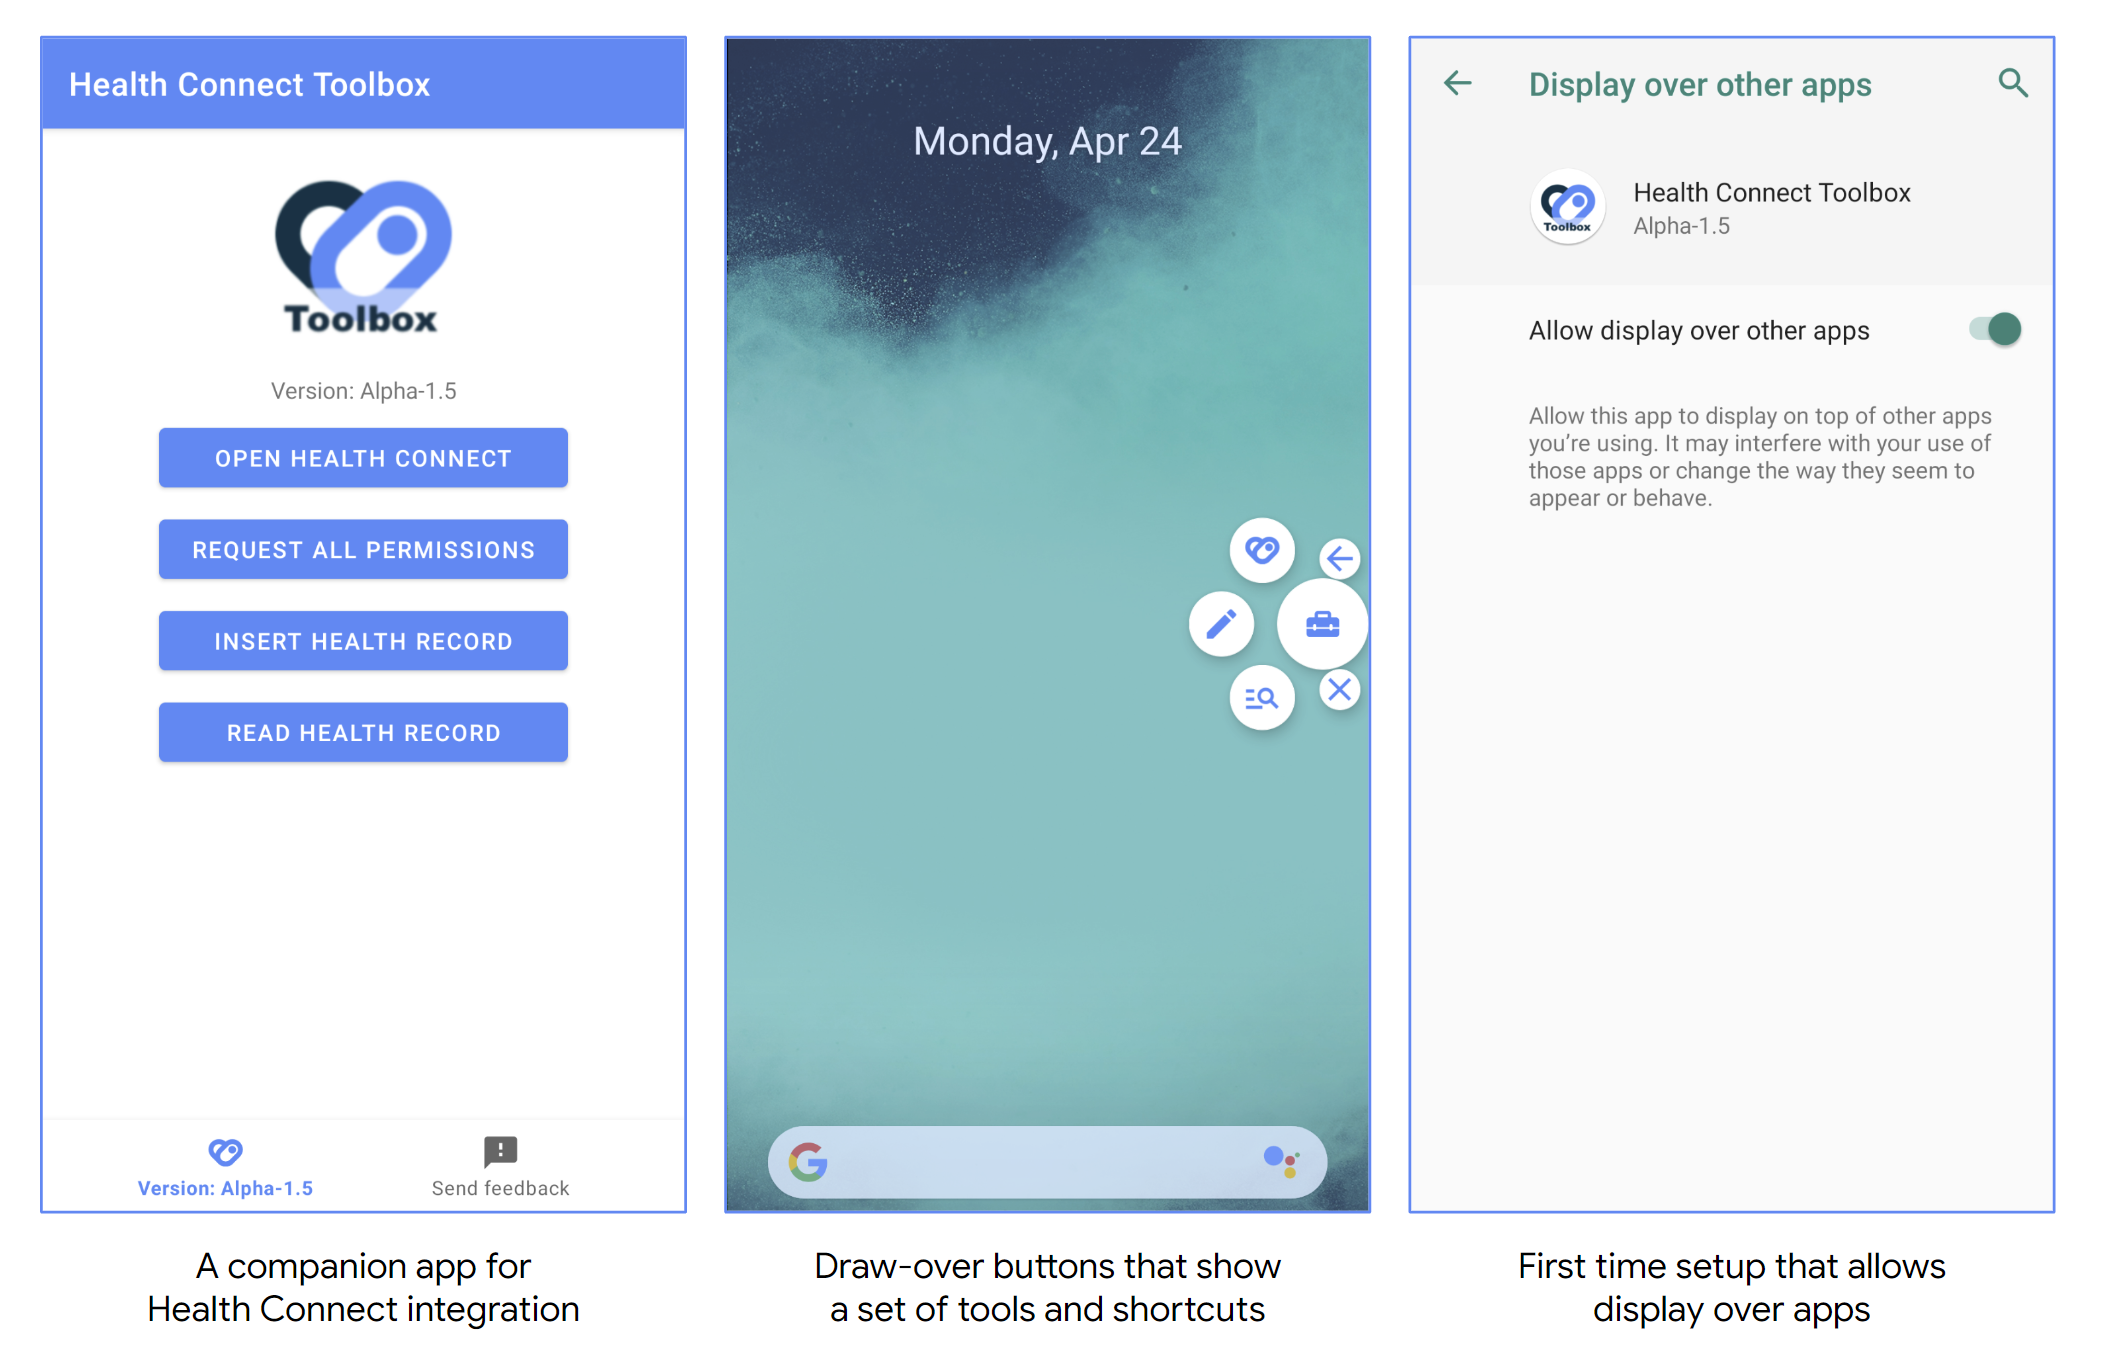 La app de Health Connect Toolbox se muestra como una interfaz de usuario completa y como botones de acceso directo de superposición. Los usuarios pueden configurar estas últimas una vez abiertas por primera vez.